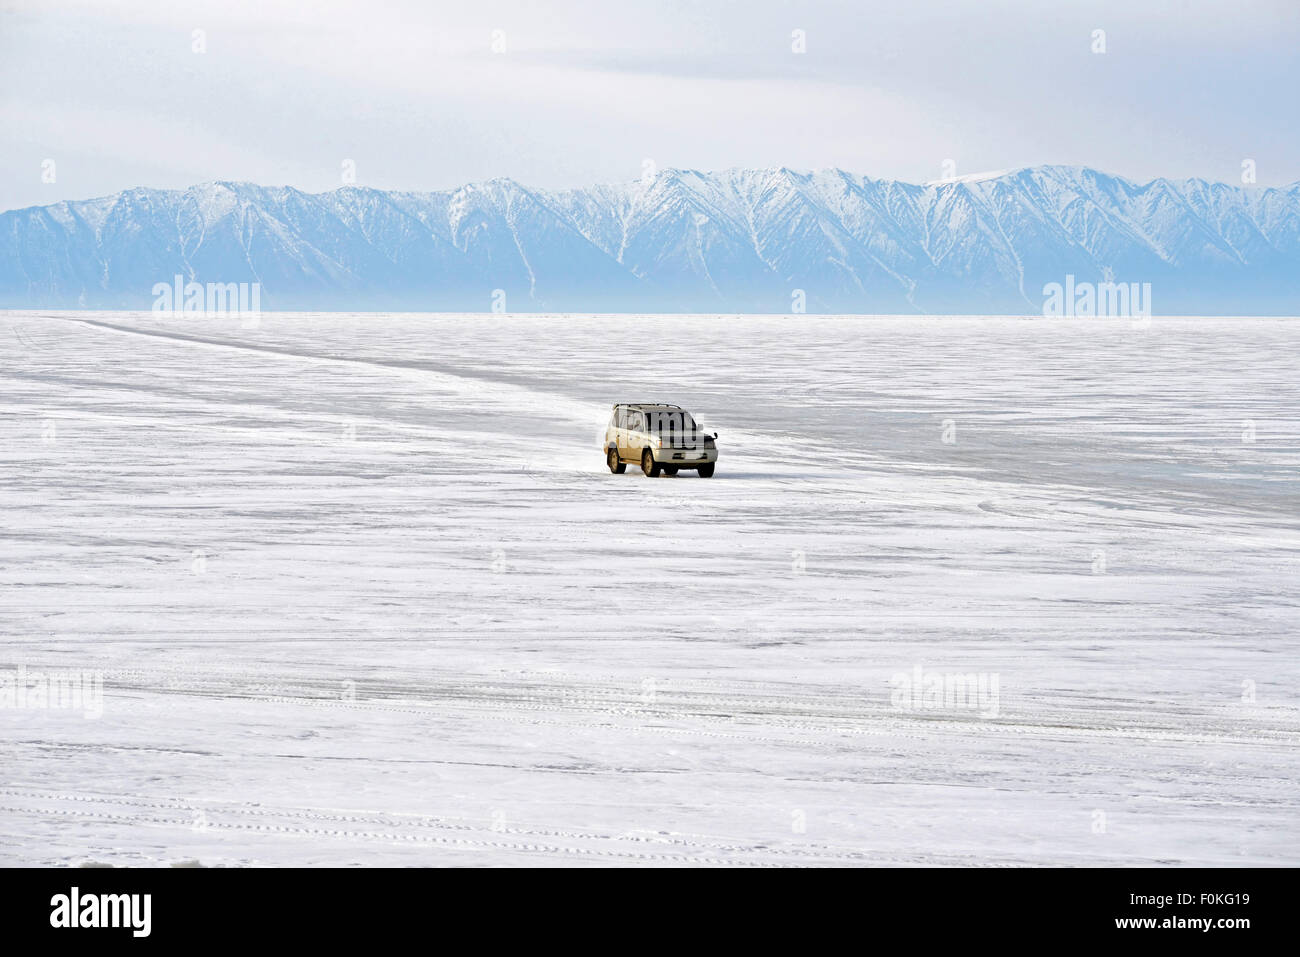 Russia, Lake Baikal, pickup truck driving on frozen lake Stock Photo